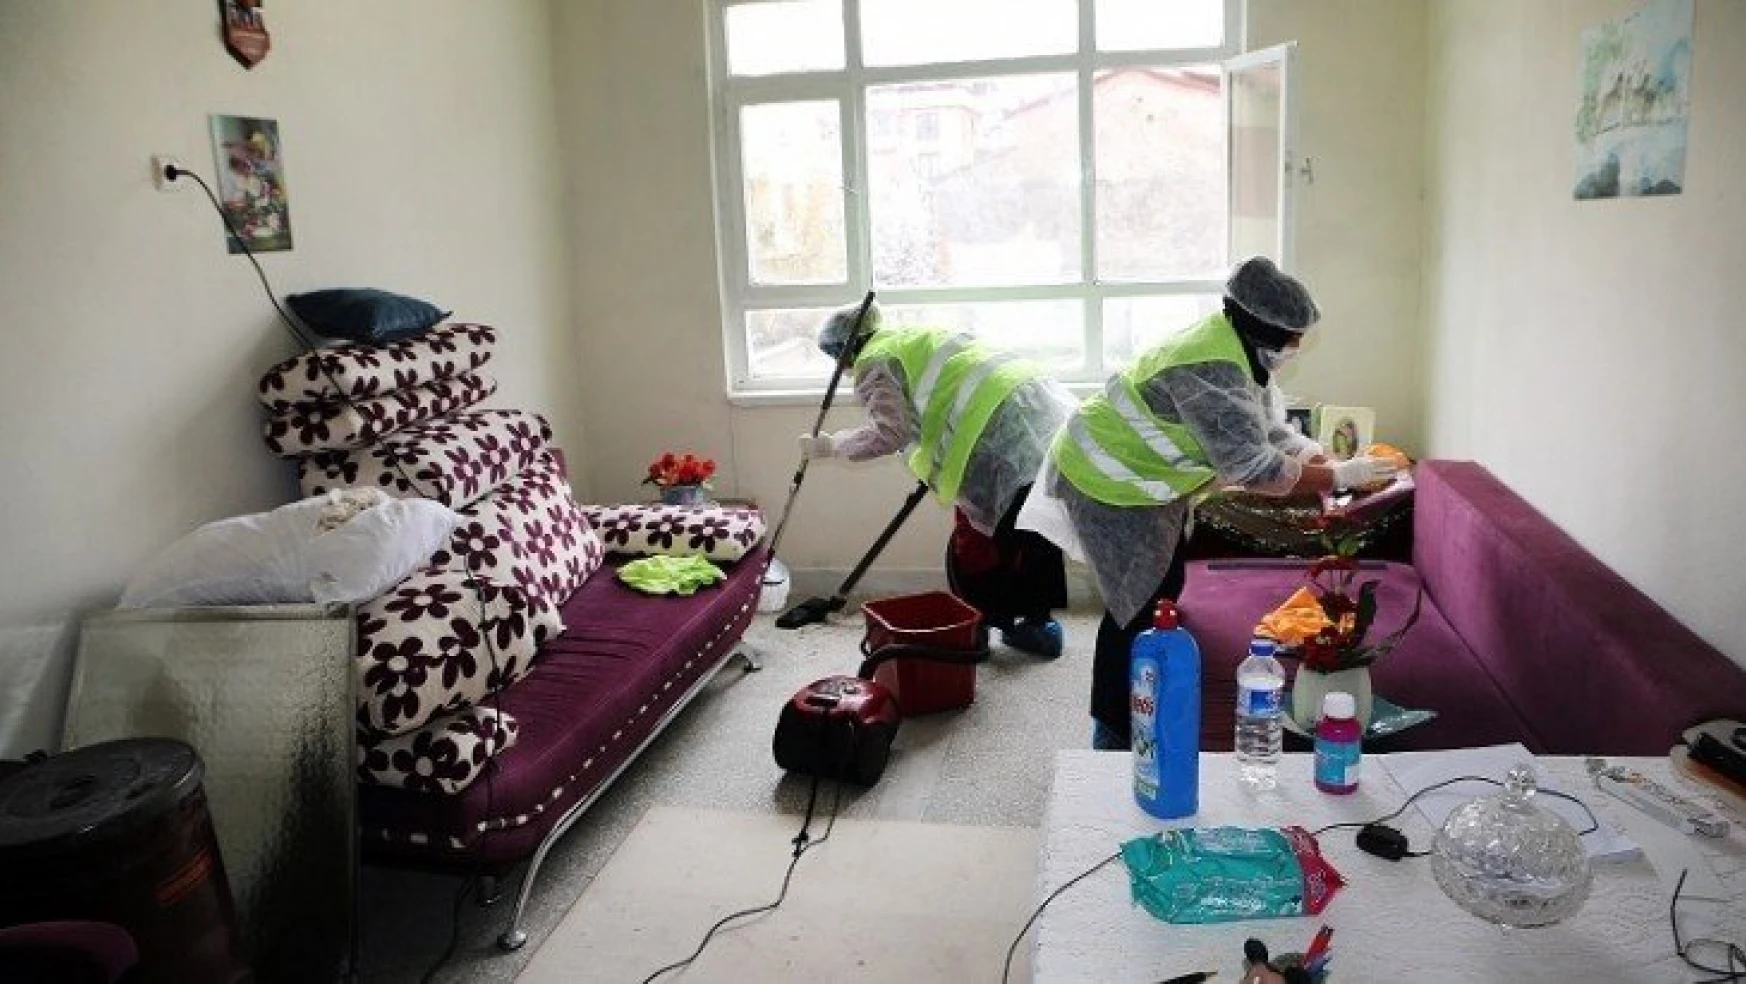 Elazığ Belediyesi'nden Yaşlı Ve Kimsesiz Vatandaşlara Evde Temizlik Hizmeti